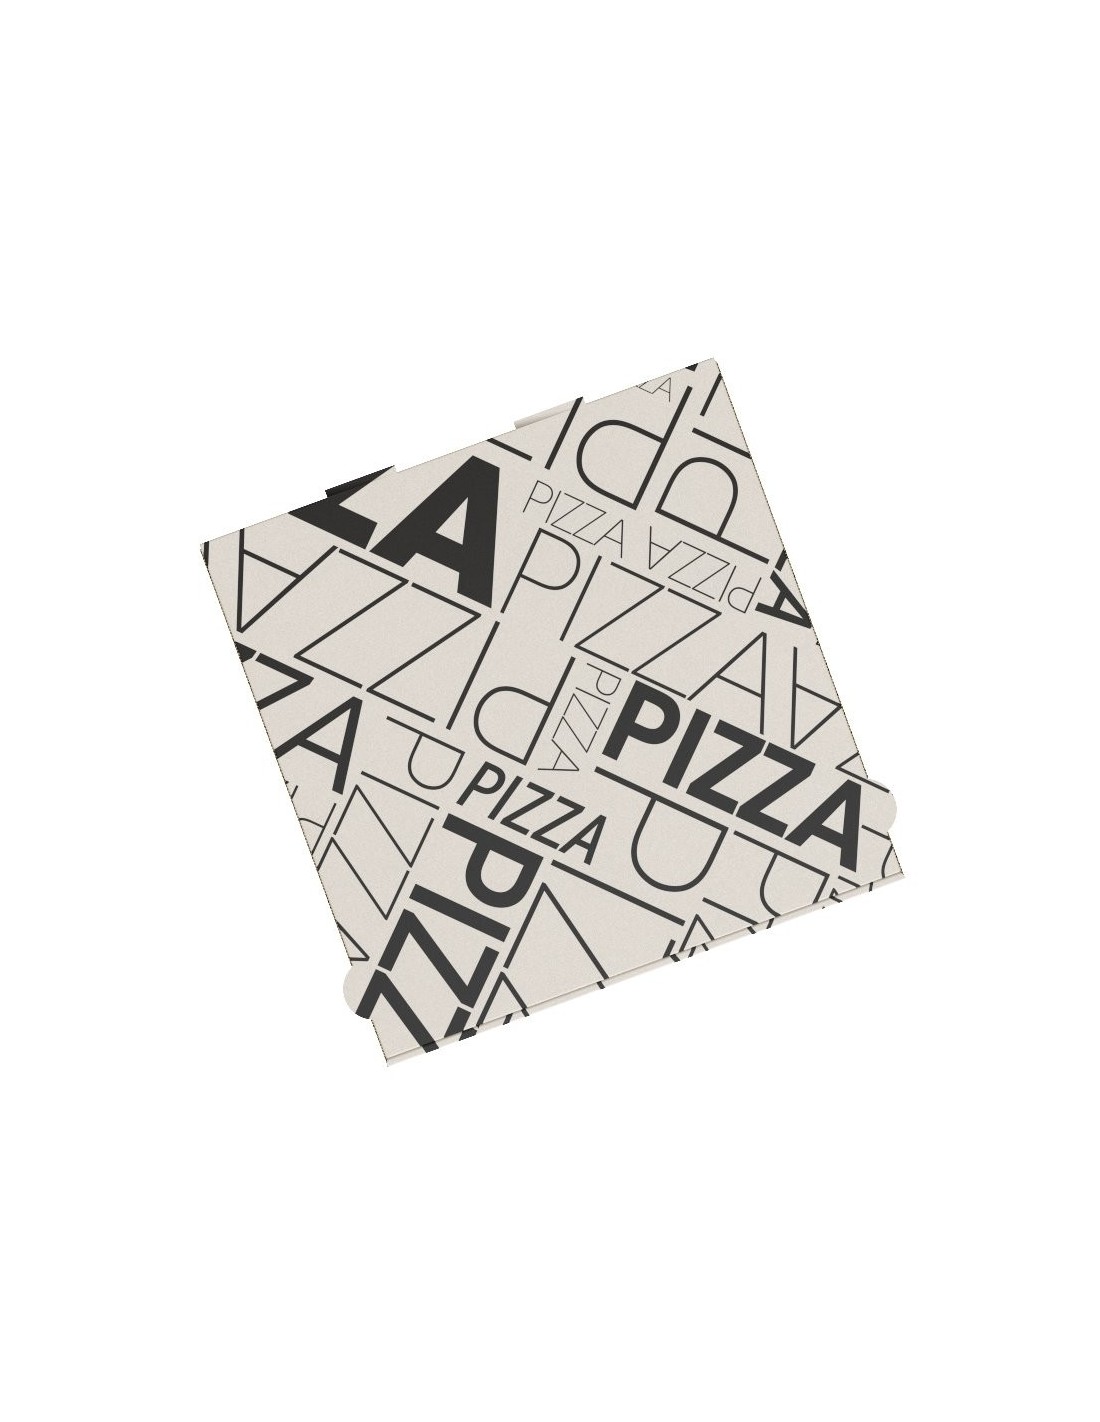 Boite à pizza Art Déco, décor moderne et sobre, en carton kraft